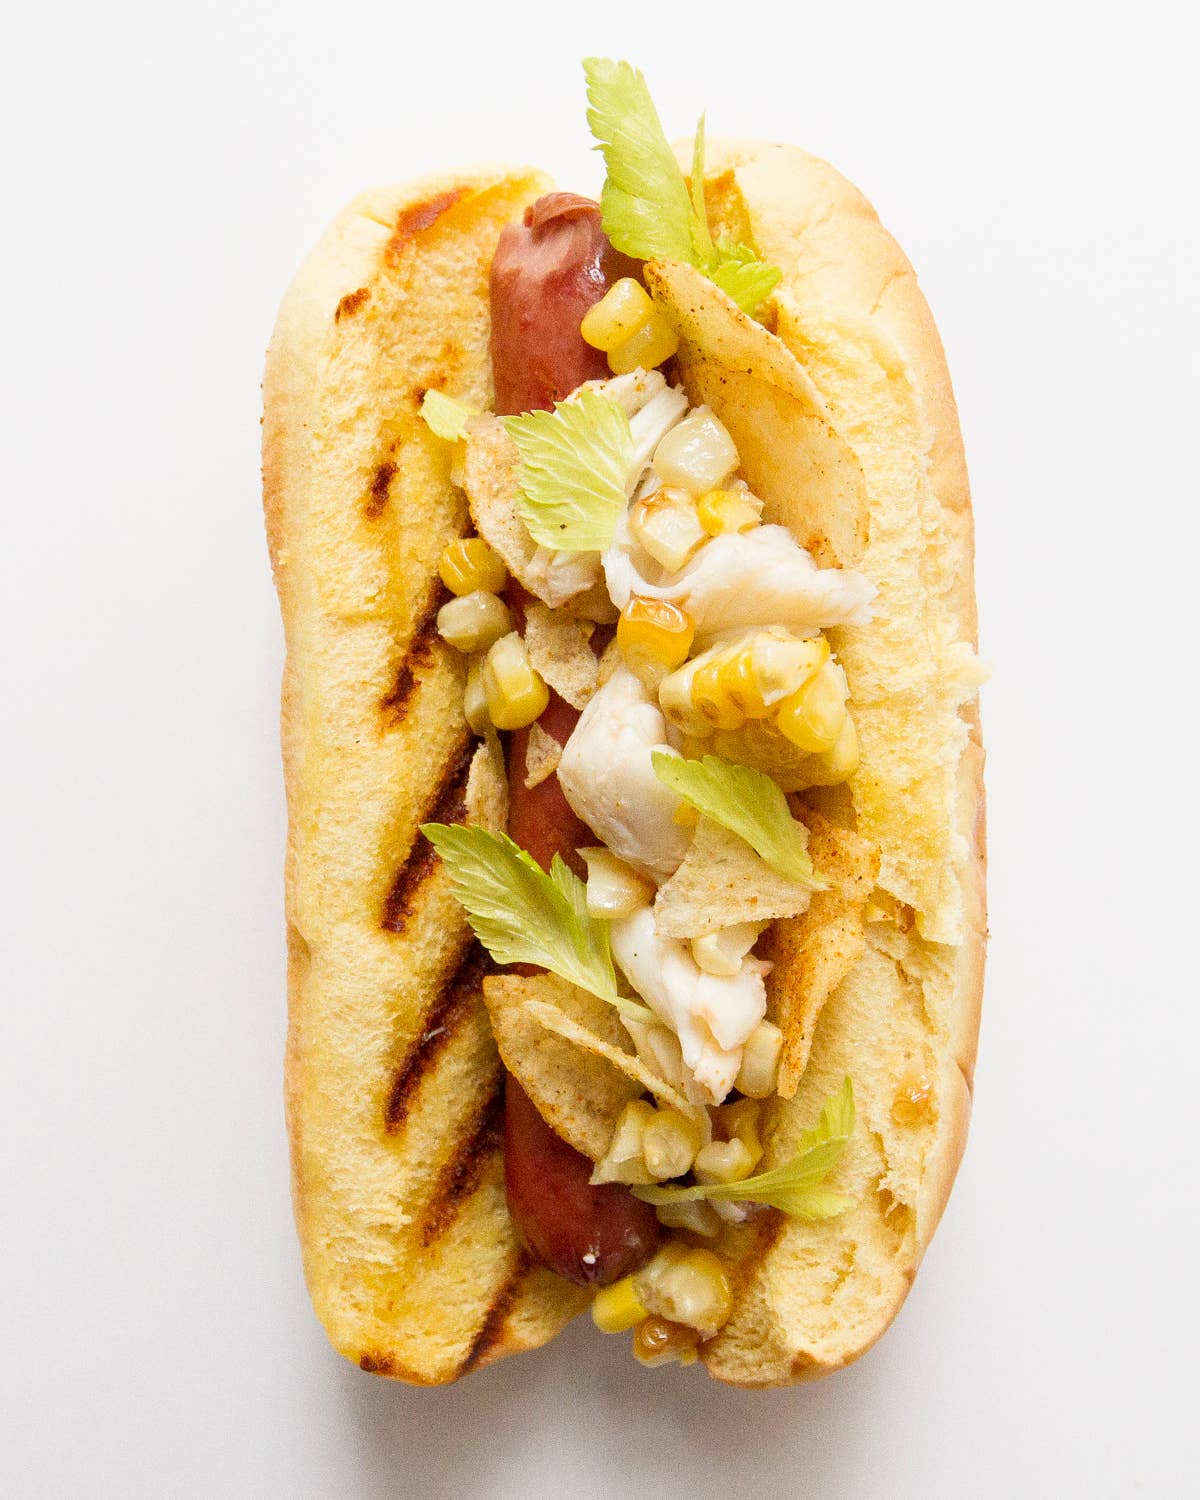 Maryland Hot Dog